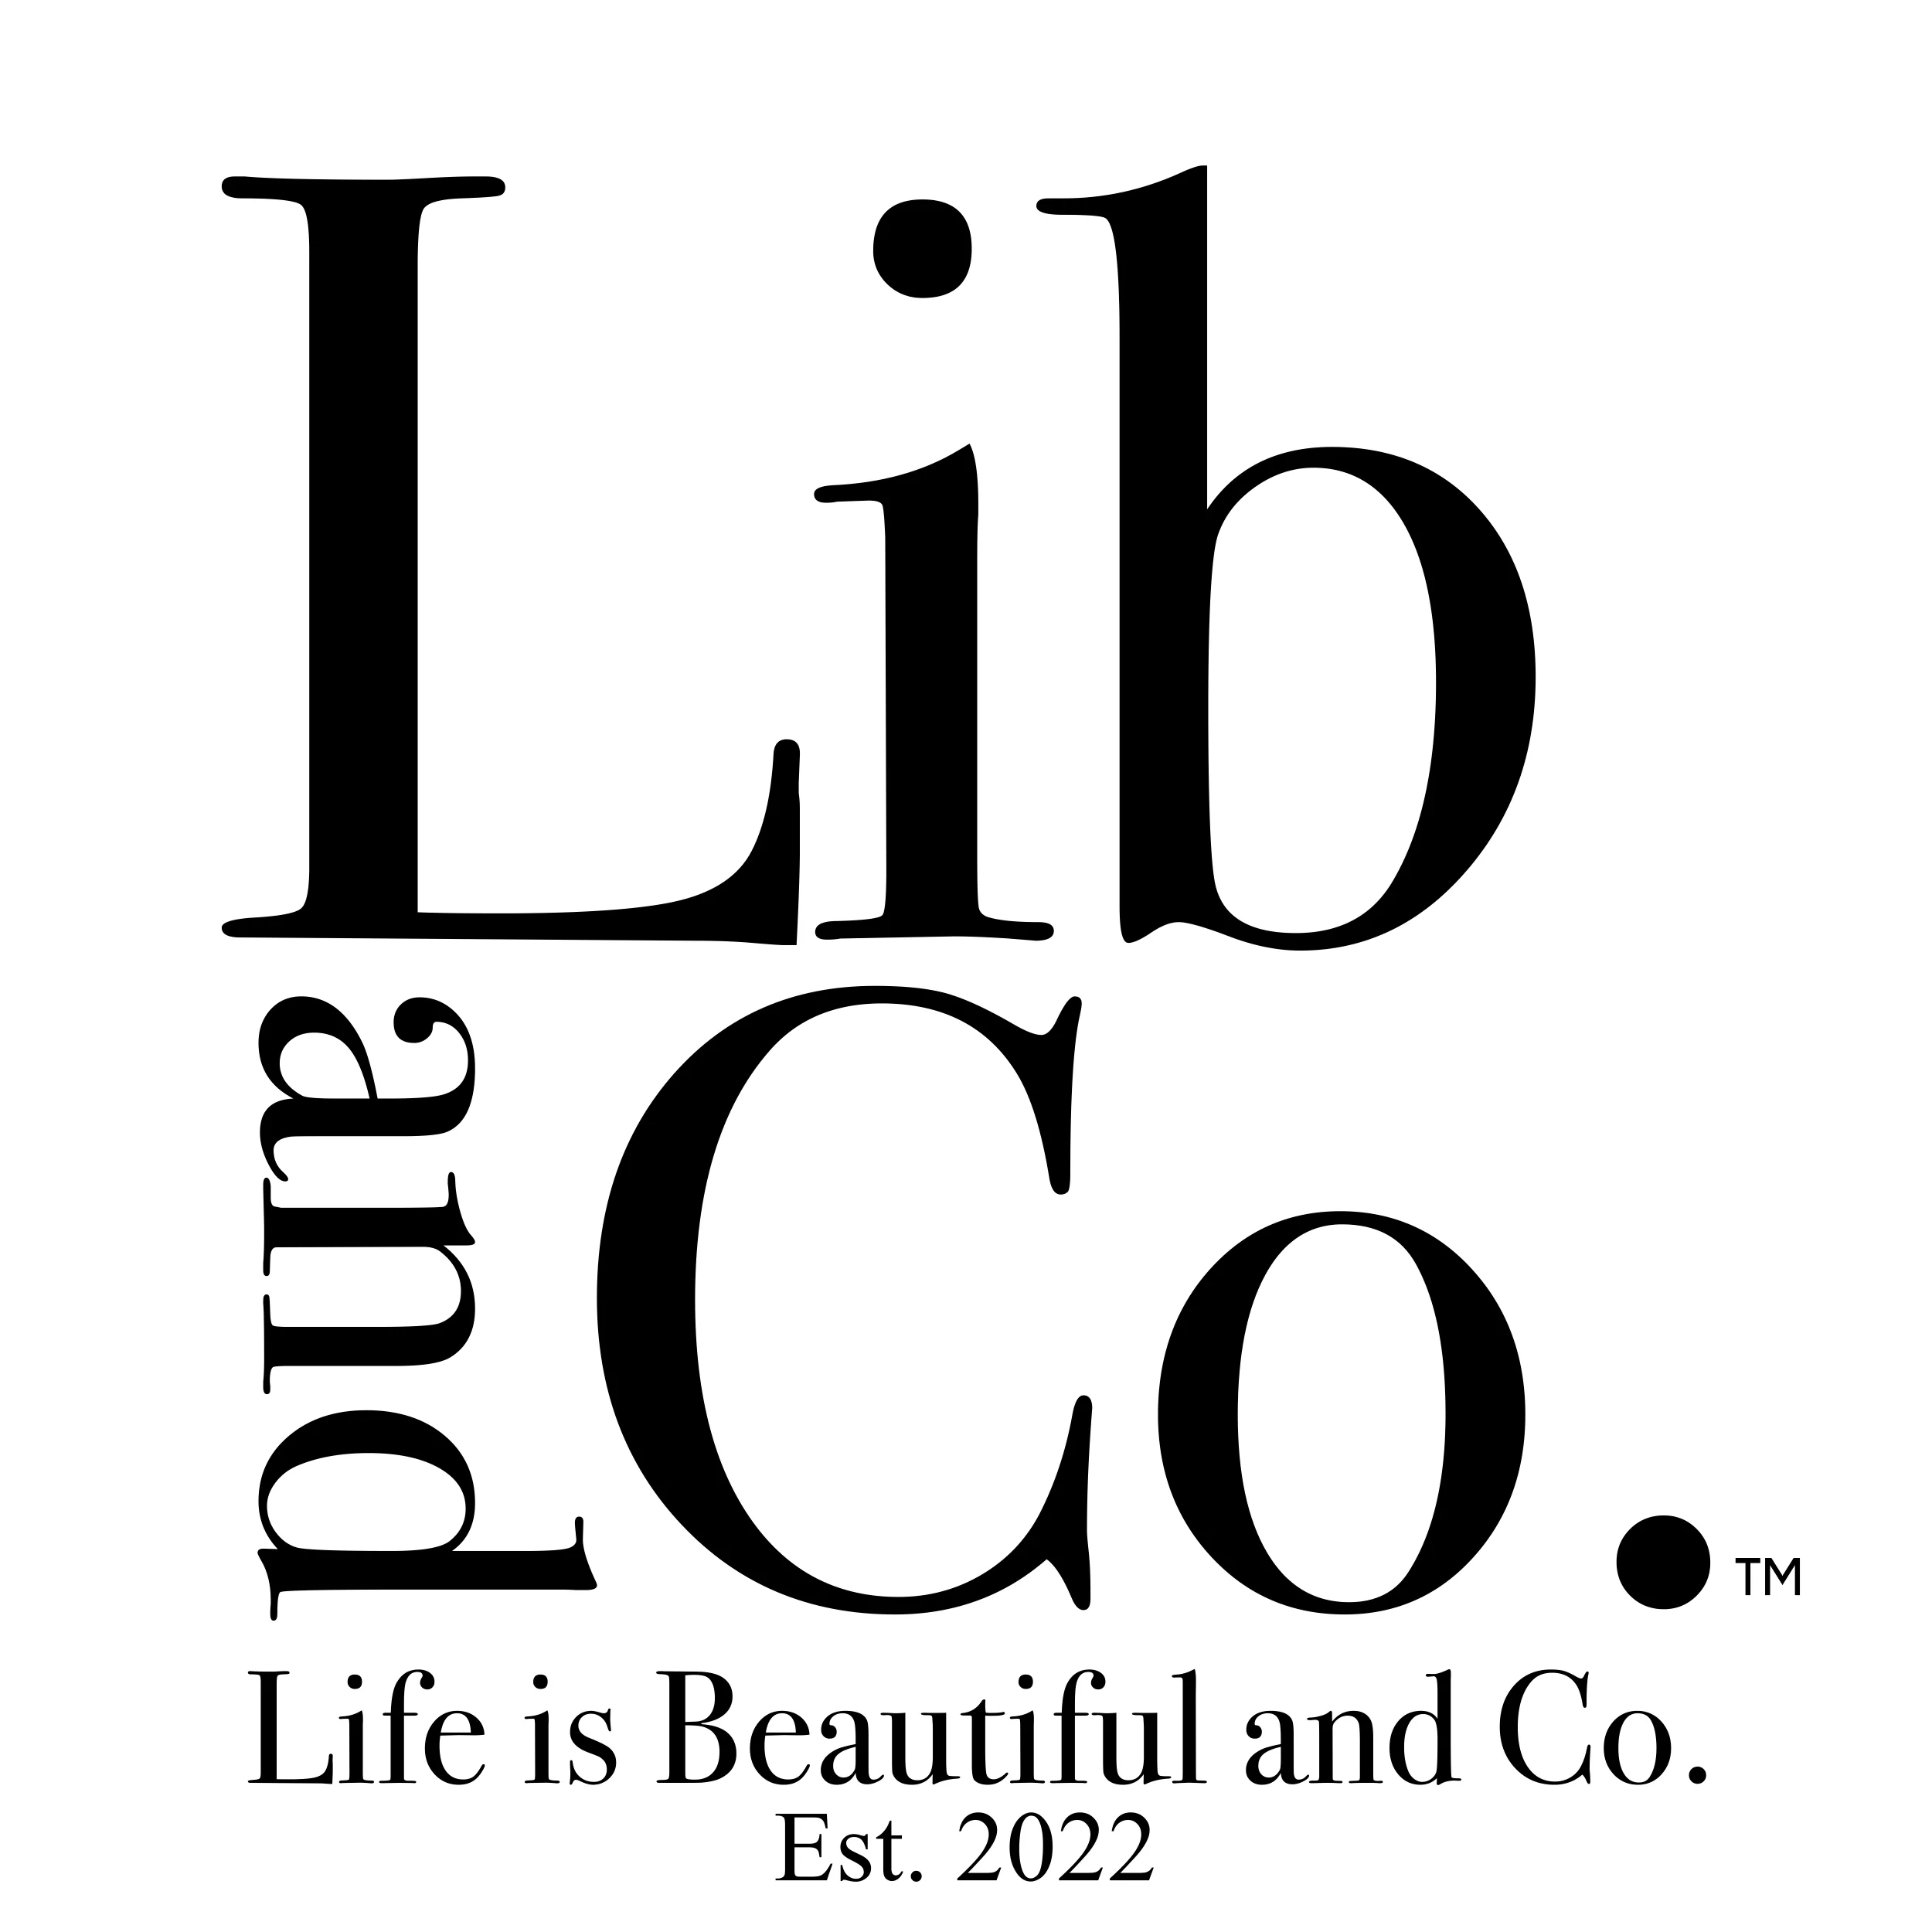 LIB & CO. CA in 